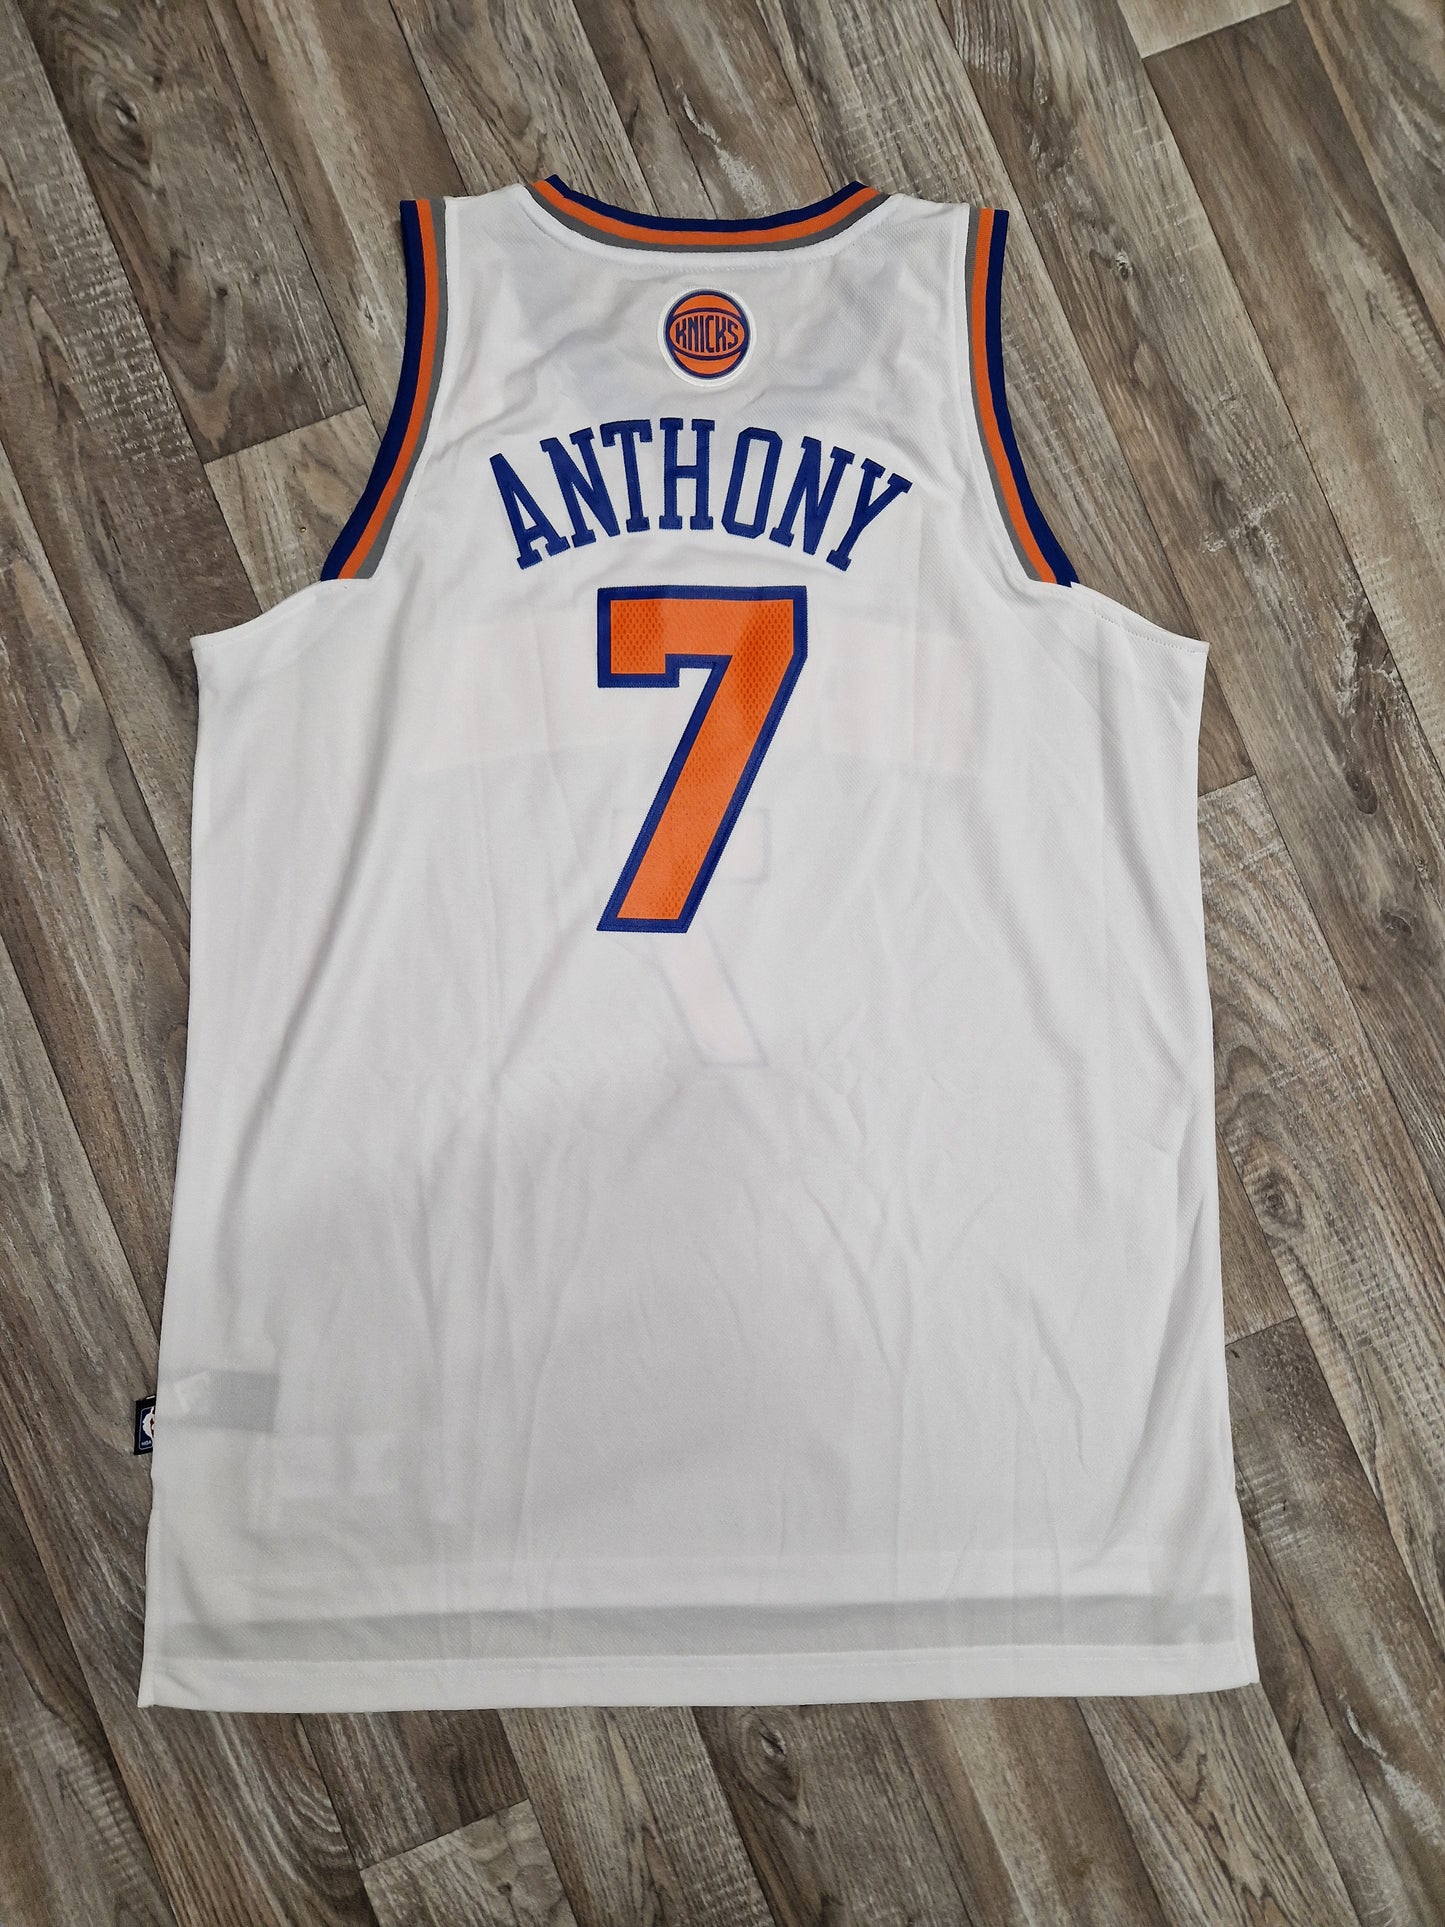 Carmelo Anthony New York Knicks Jersey Size Large